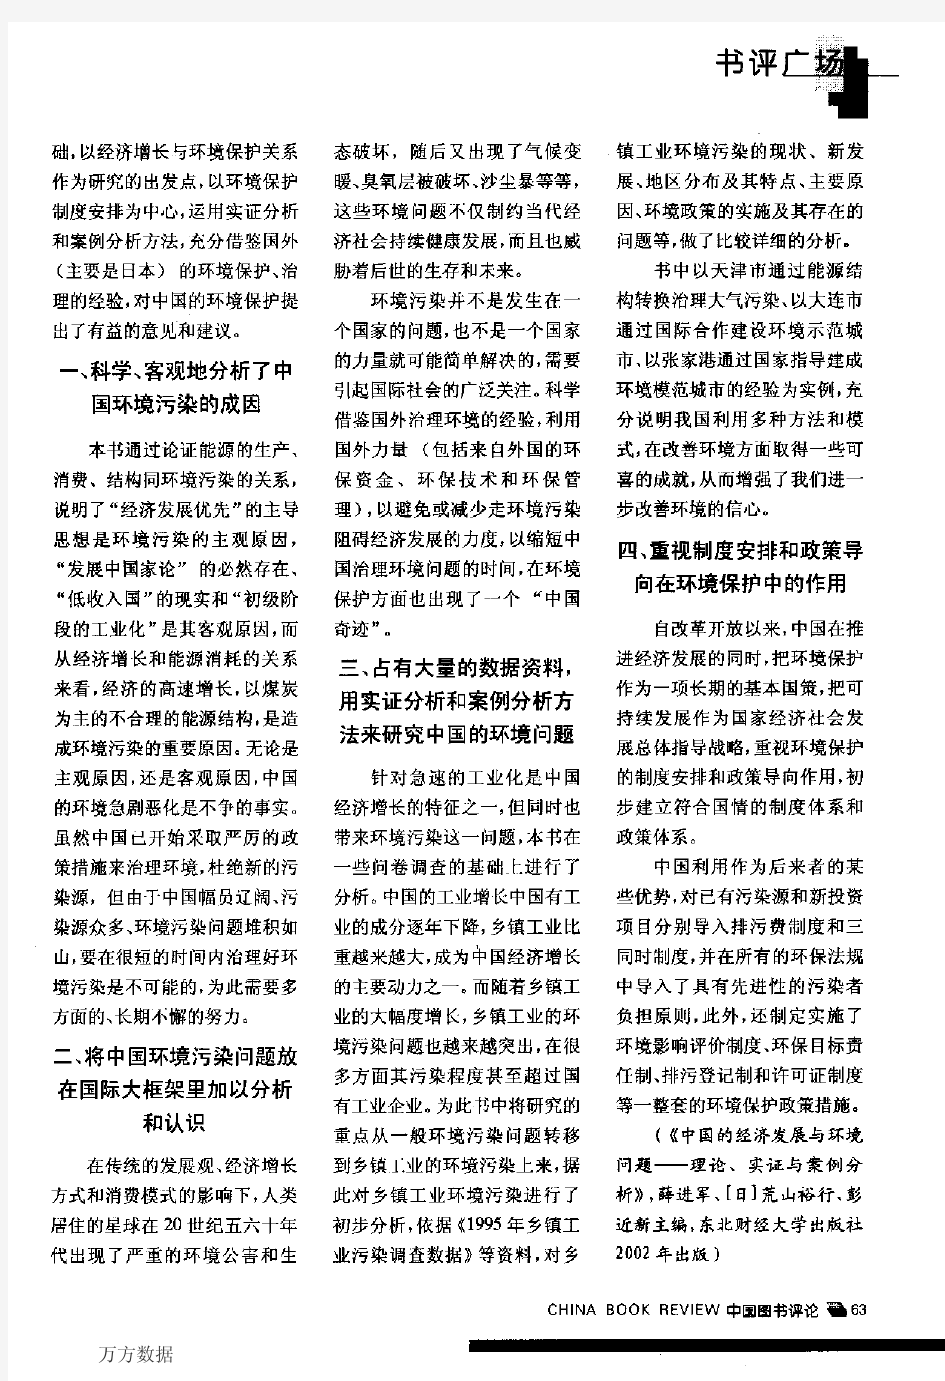 研究中国环境保护问题的重要成果--读《中国的经济发展与环境问题--理论、实证与案例分析》